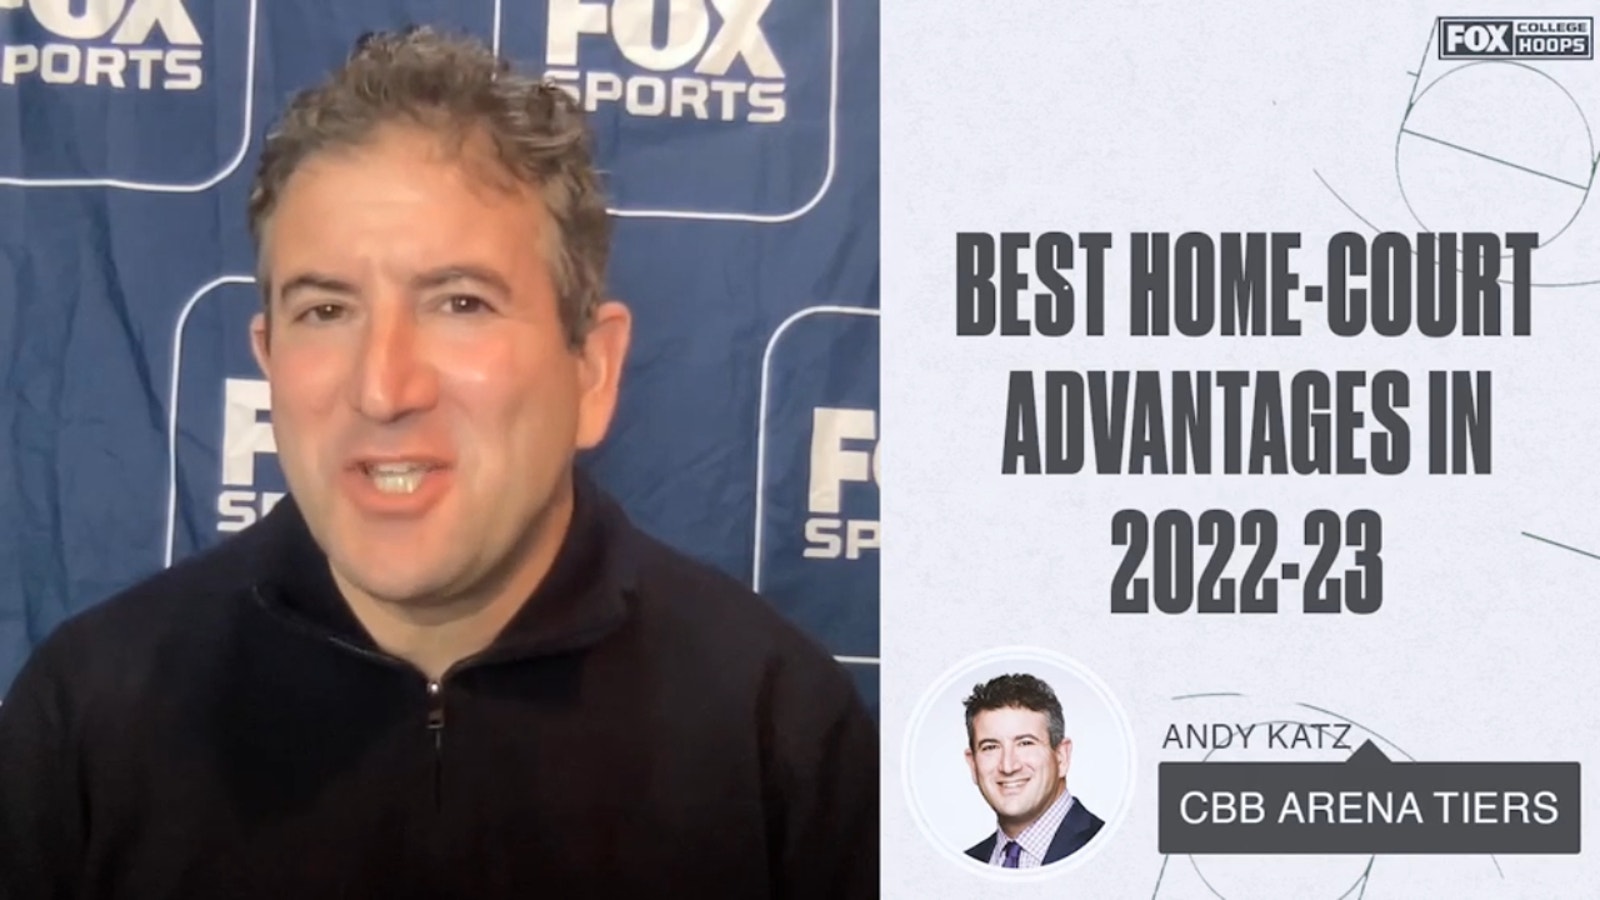 Andy Katz's best home-court advantages